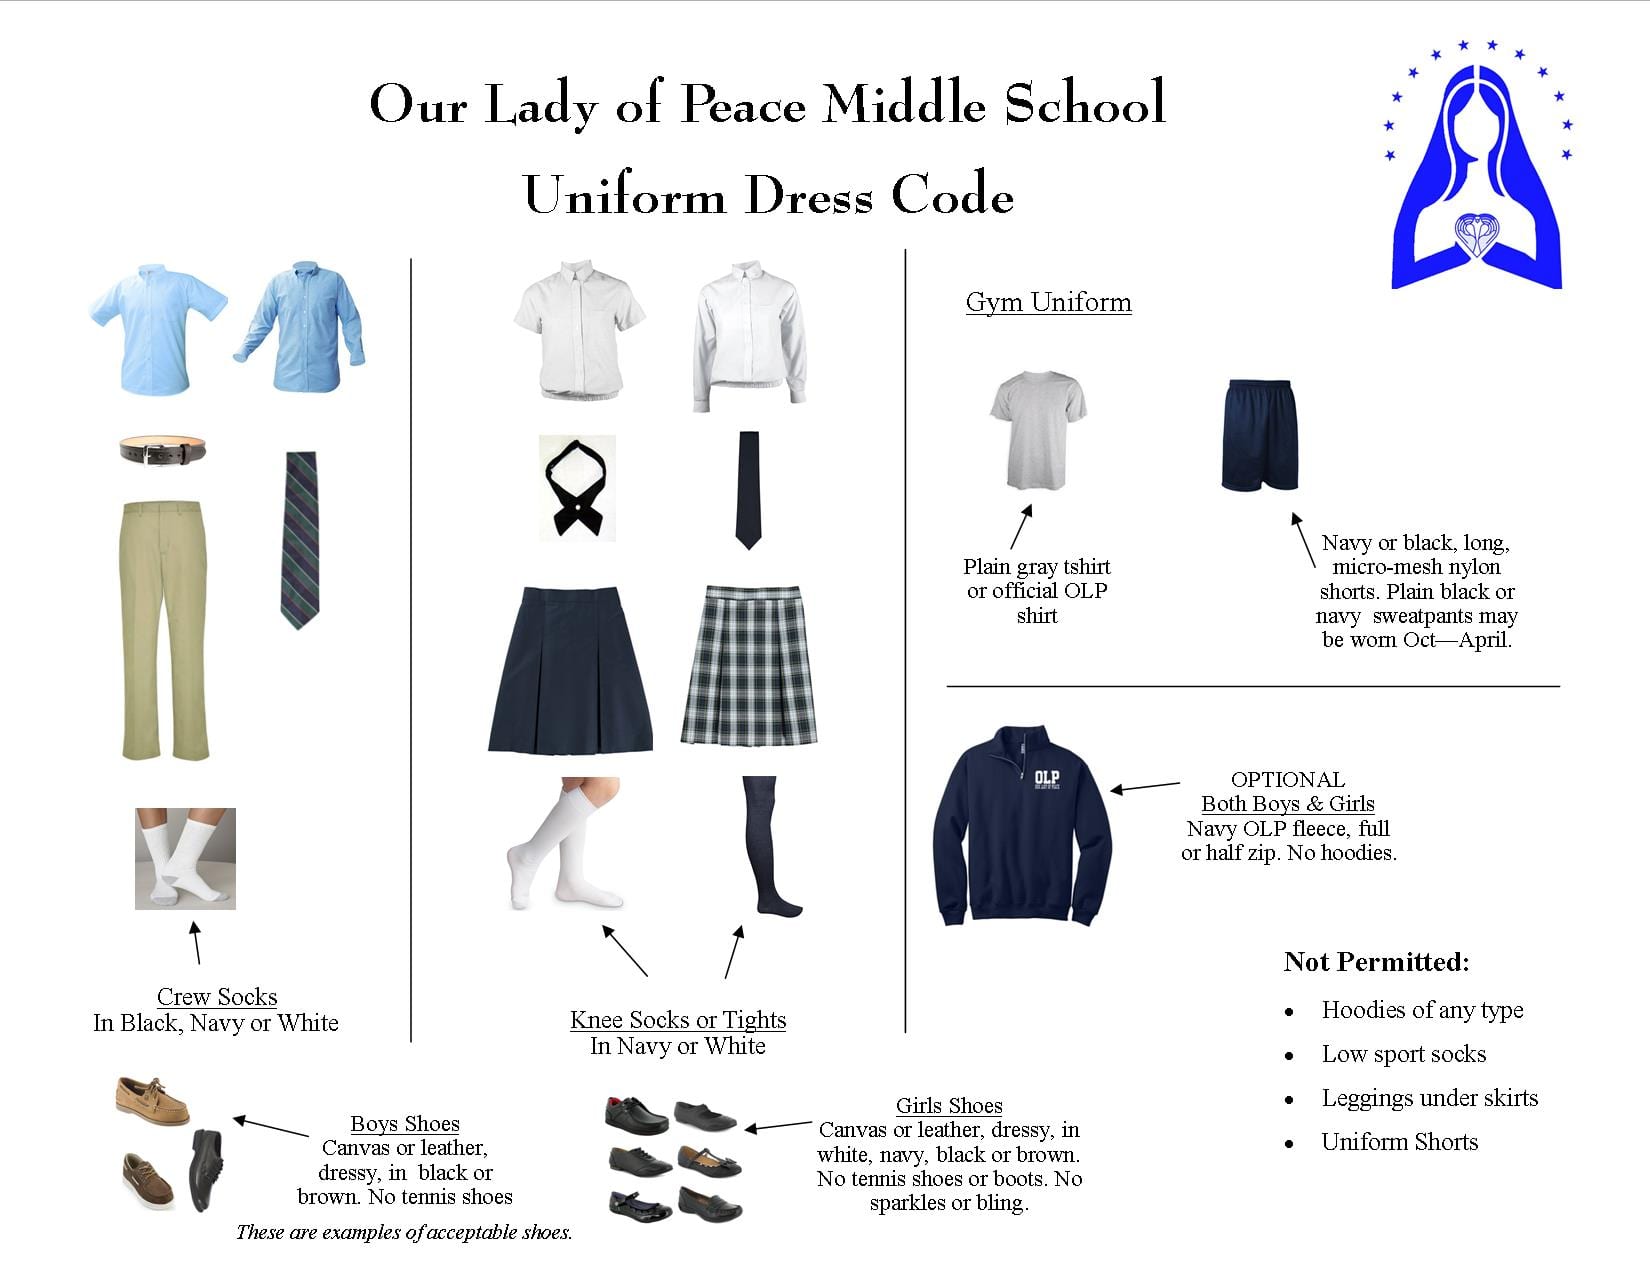 tennis shoes for school uniform